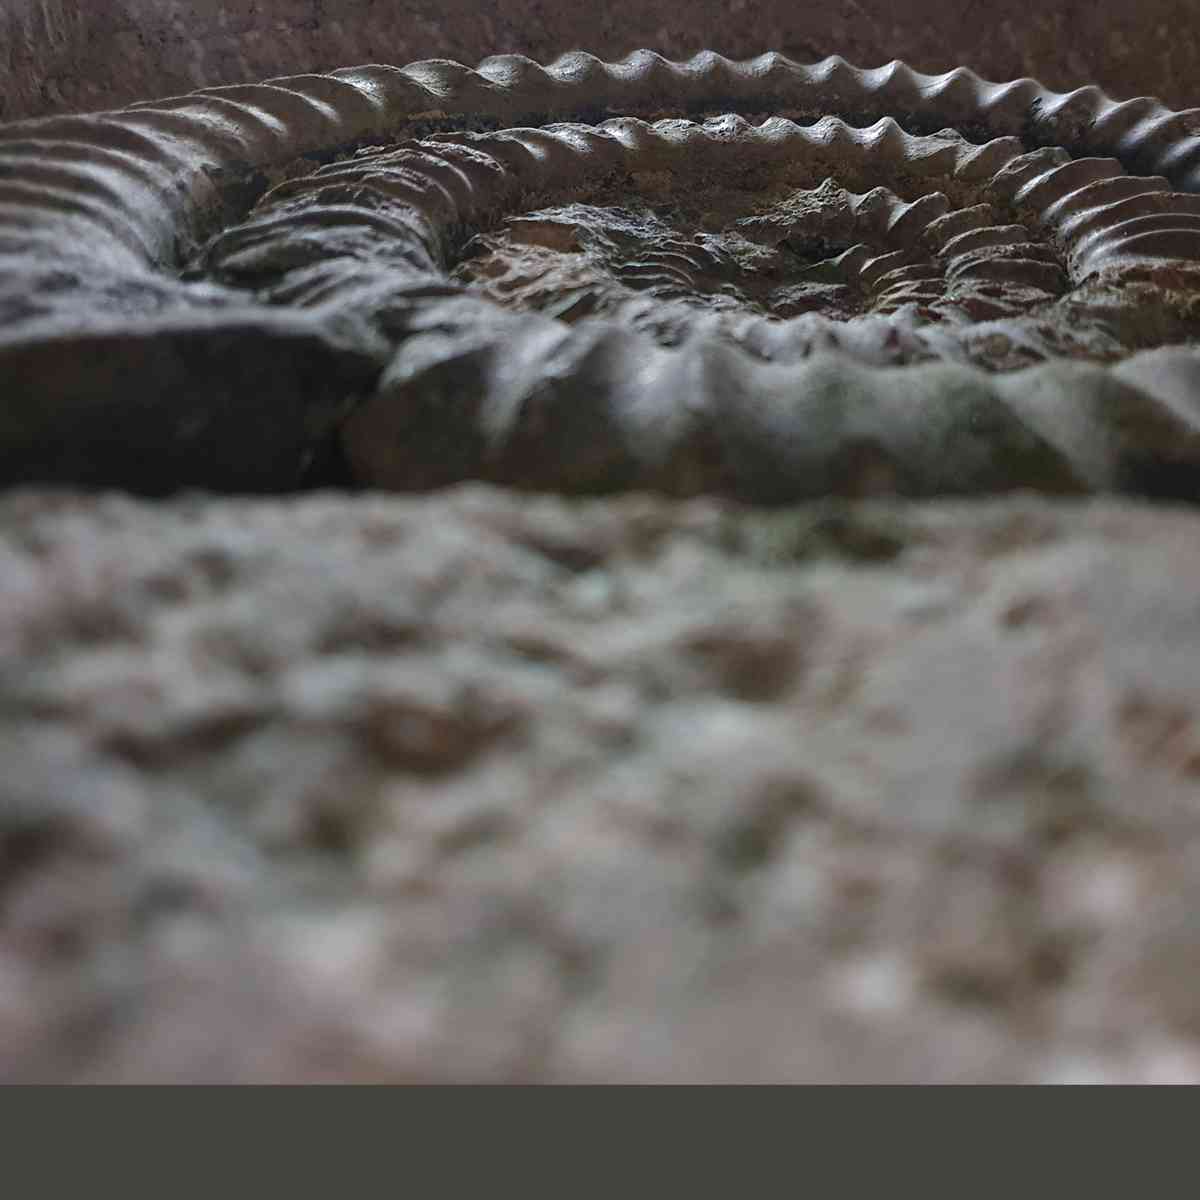 images/grabsteine/neutral-grafisch/erfürchtiger%20Ammonith.jpg#joomlaImage://local-images/grabsteine/neutral-grafisch/erfürchtiger Ammonith.jpg?width=1200&height=1200